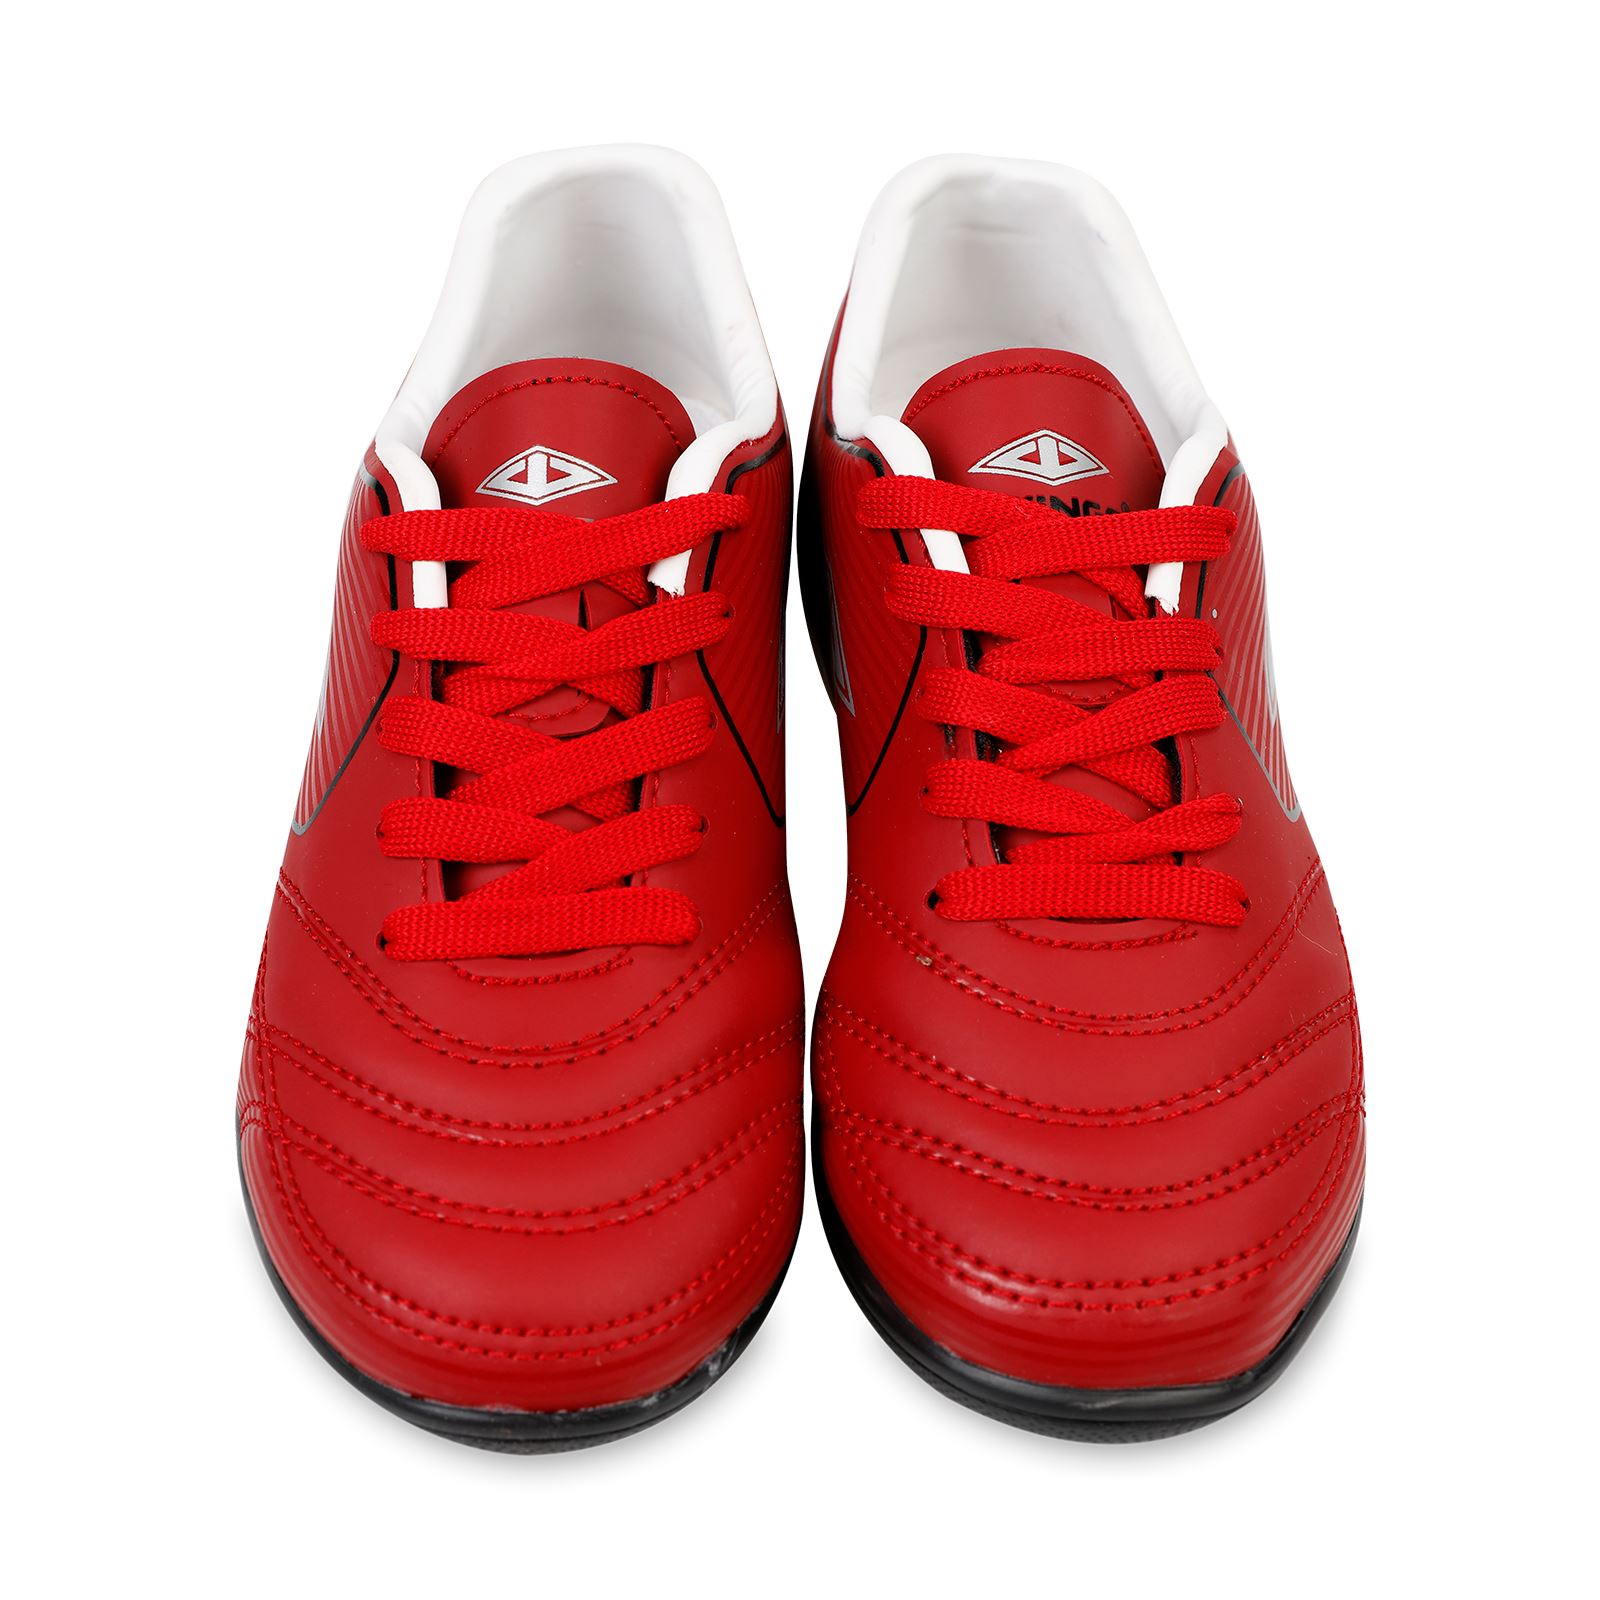 Twingo Erkek Çocuk Halı Saha Ayakkabı 31-35 Numara Kırmızı